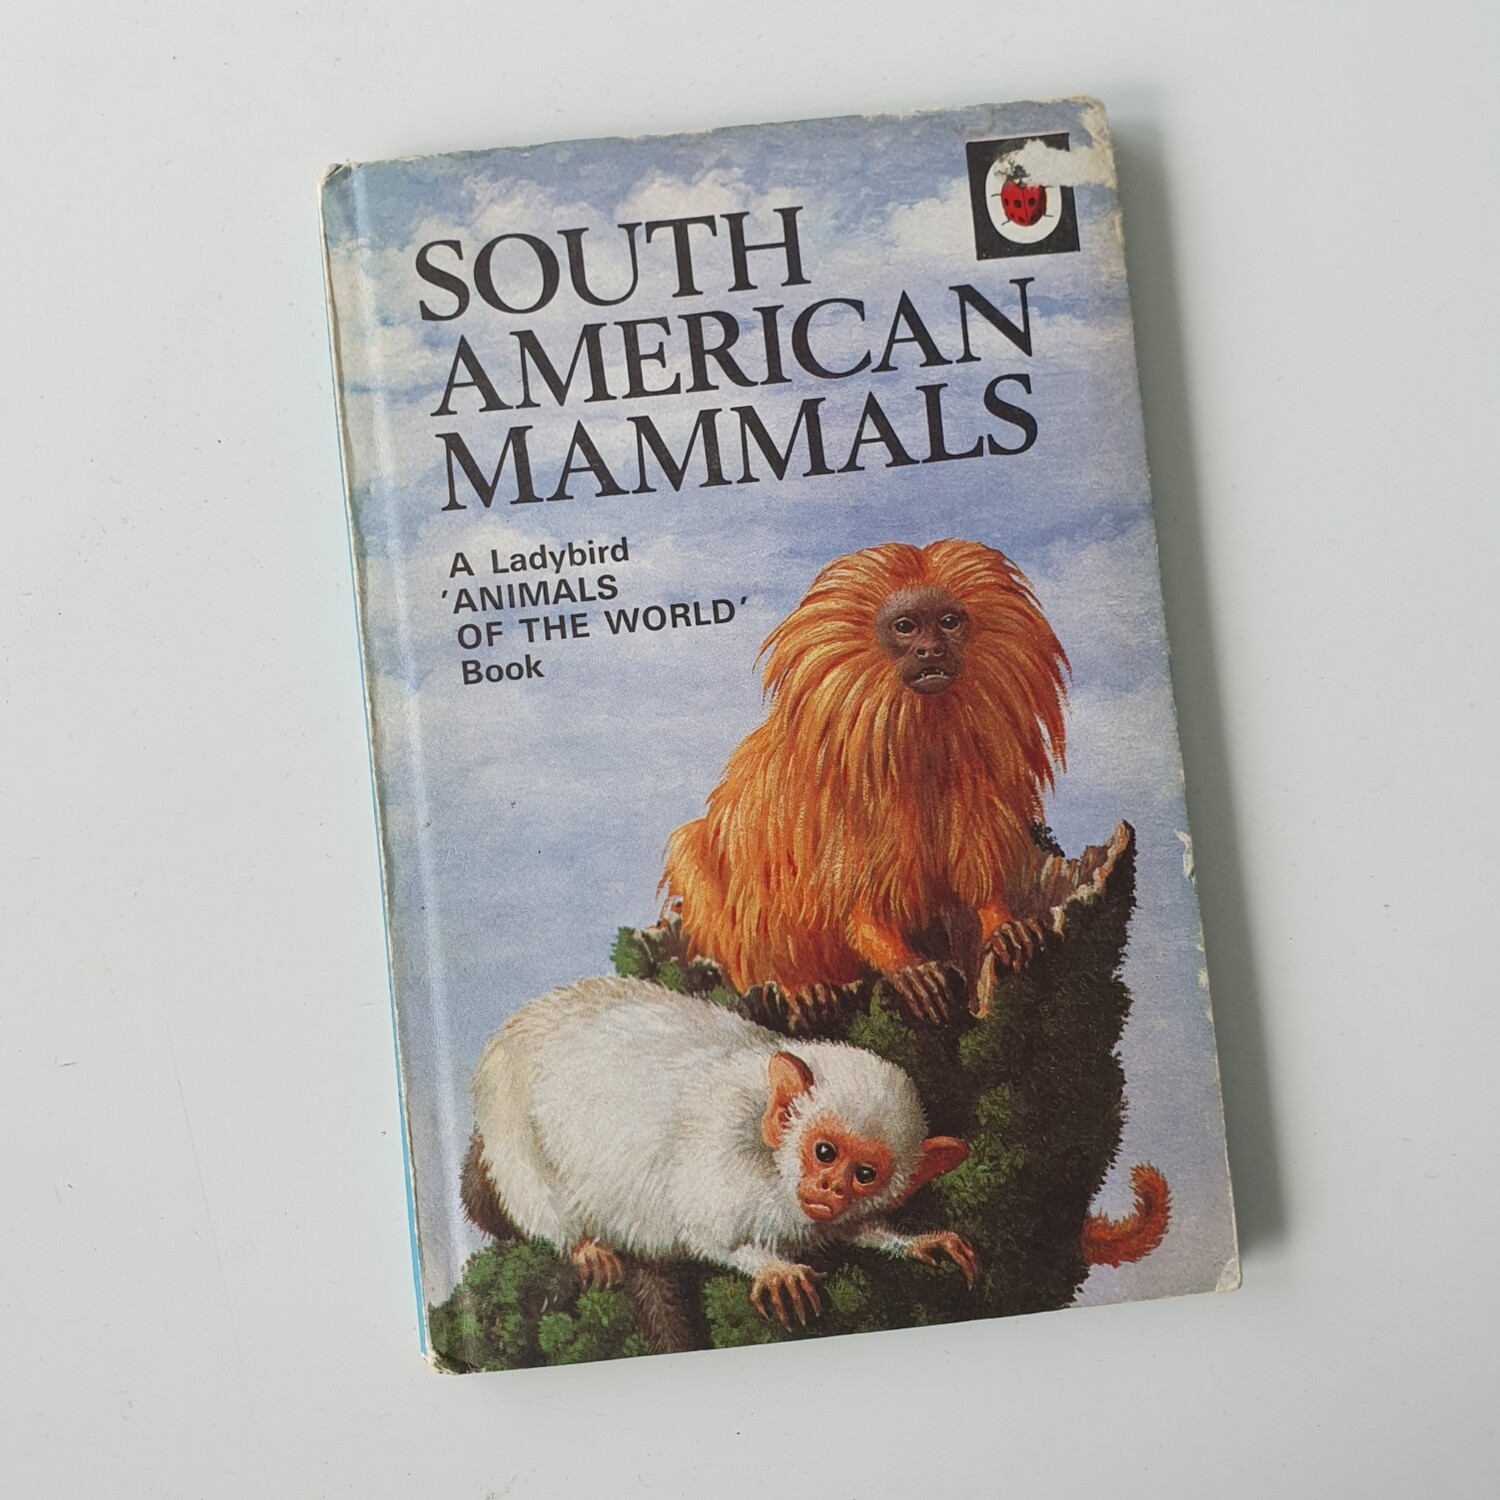 South American Mammals Notebook - Ladybird book , Marmoset